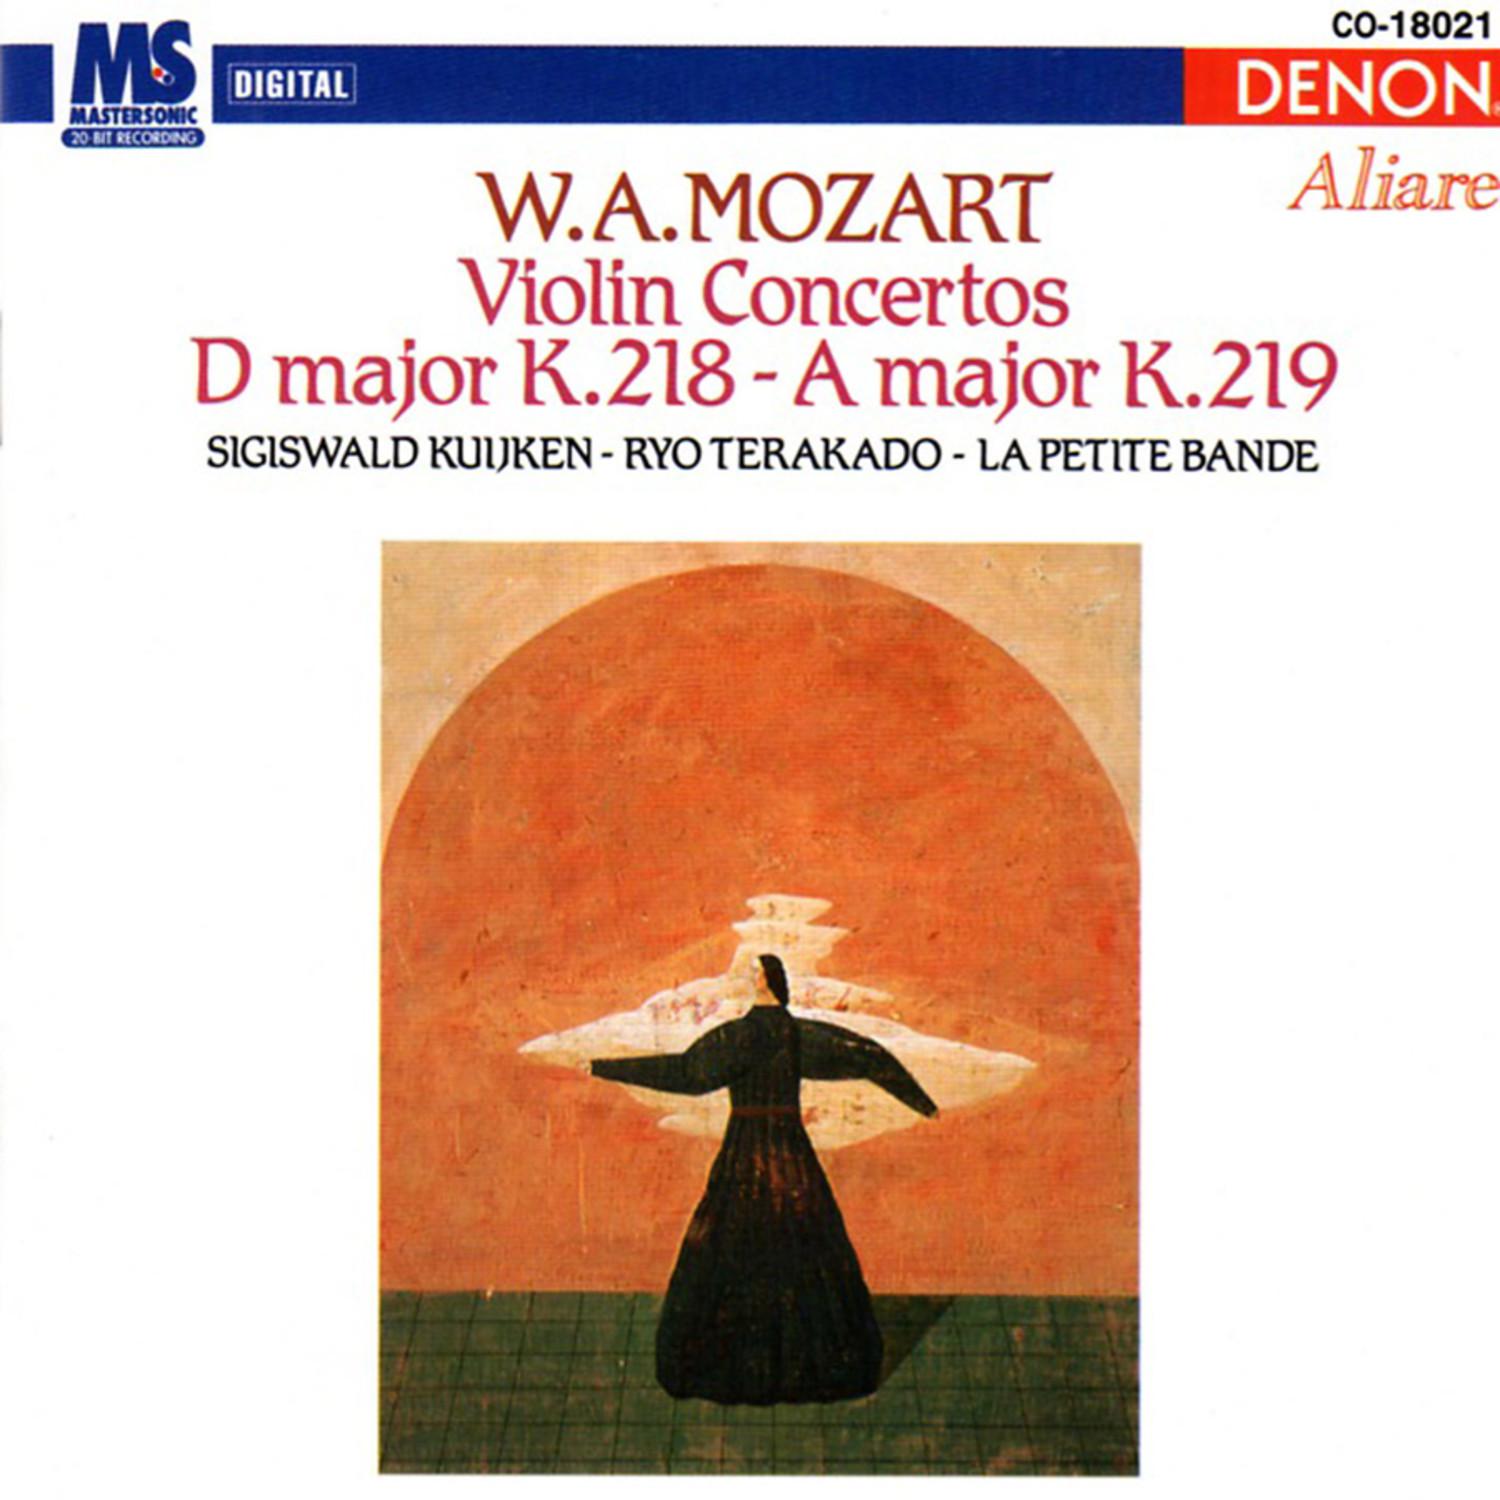 Concerto for Violin & Orchestra in D Major, K.218: III. Allegro ma non troppo